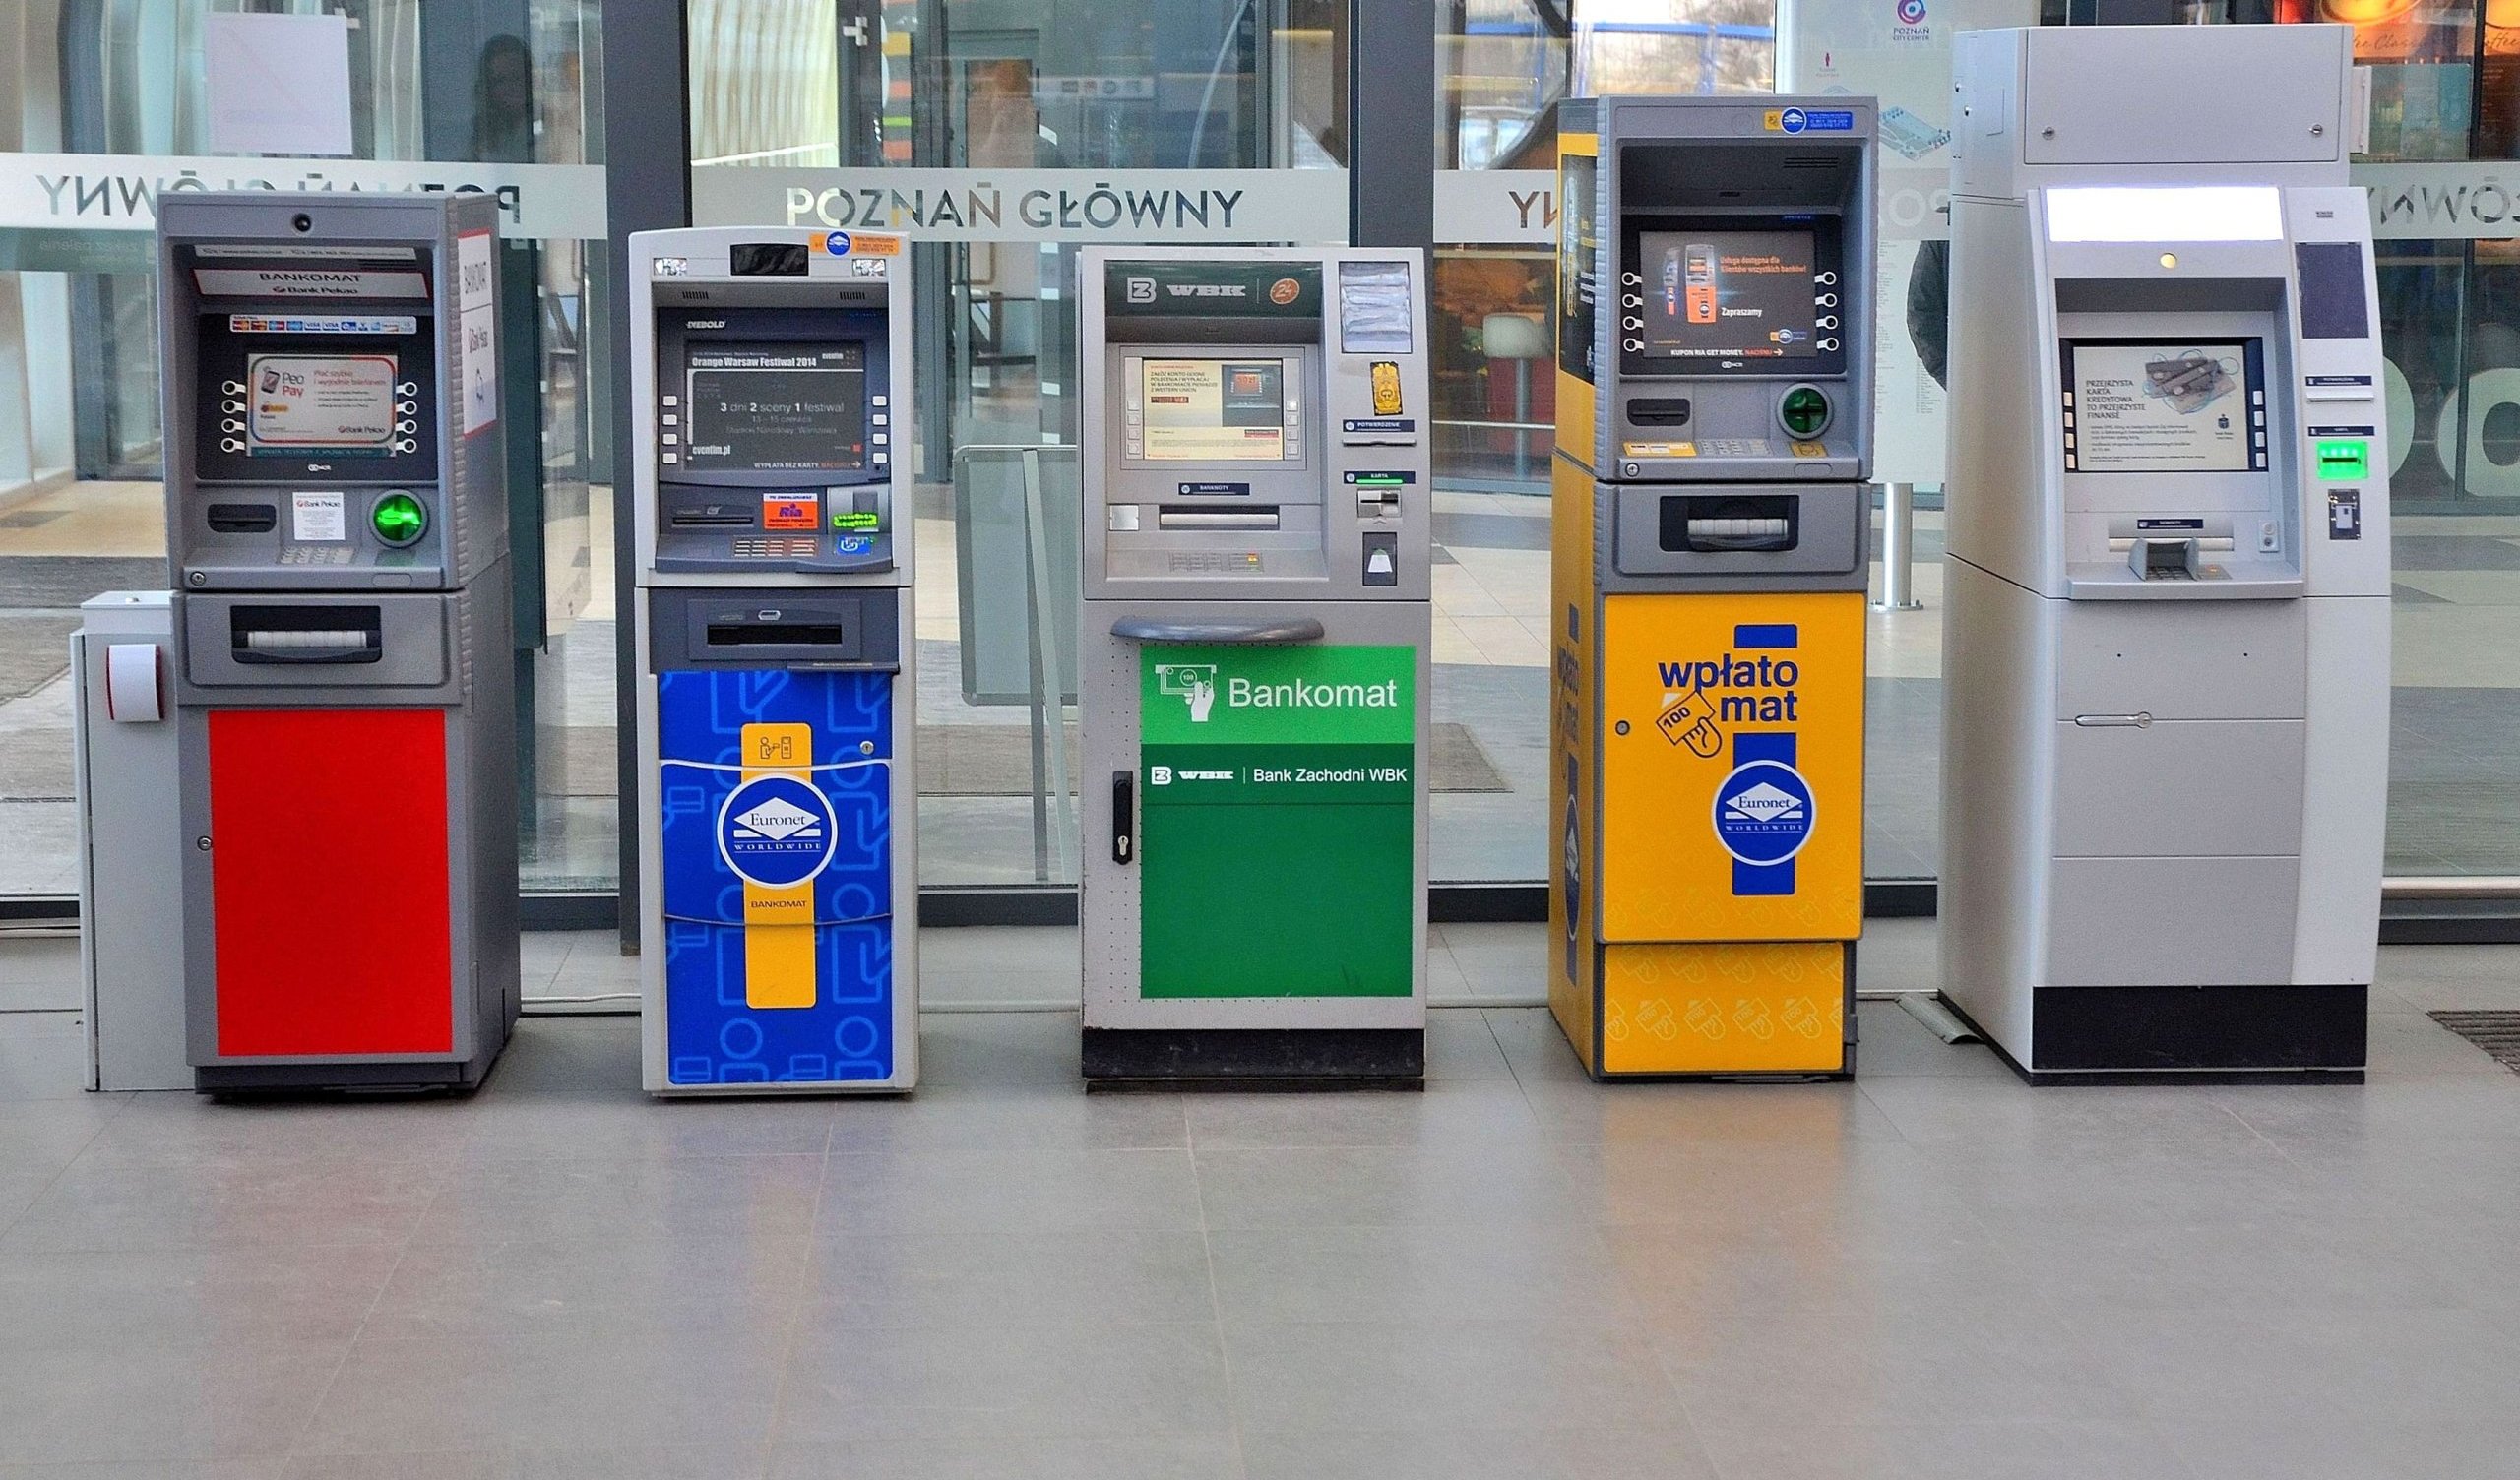 NEWS: trzy instytucje ostrzegają przed kodami kreskowymi na bankomatach